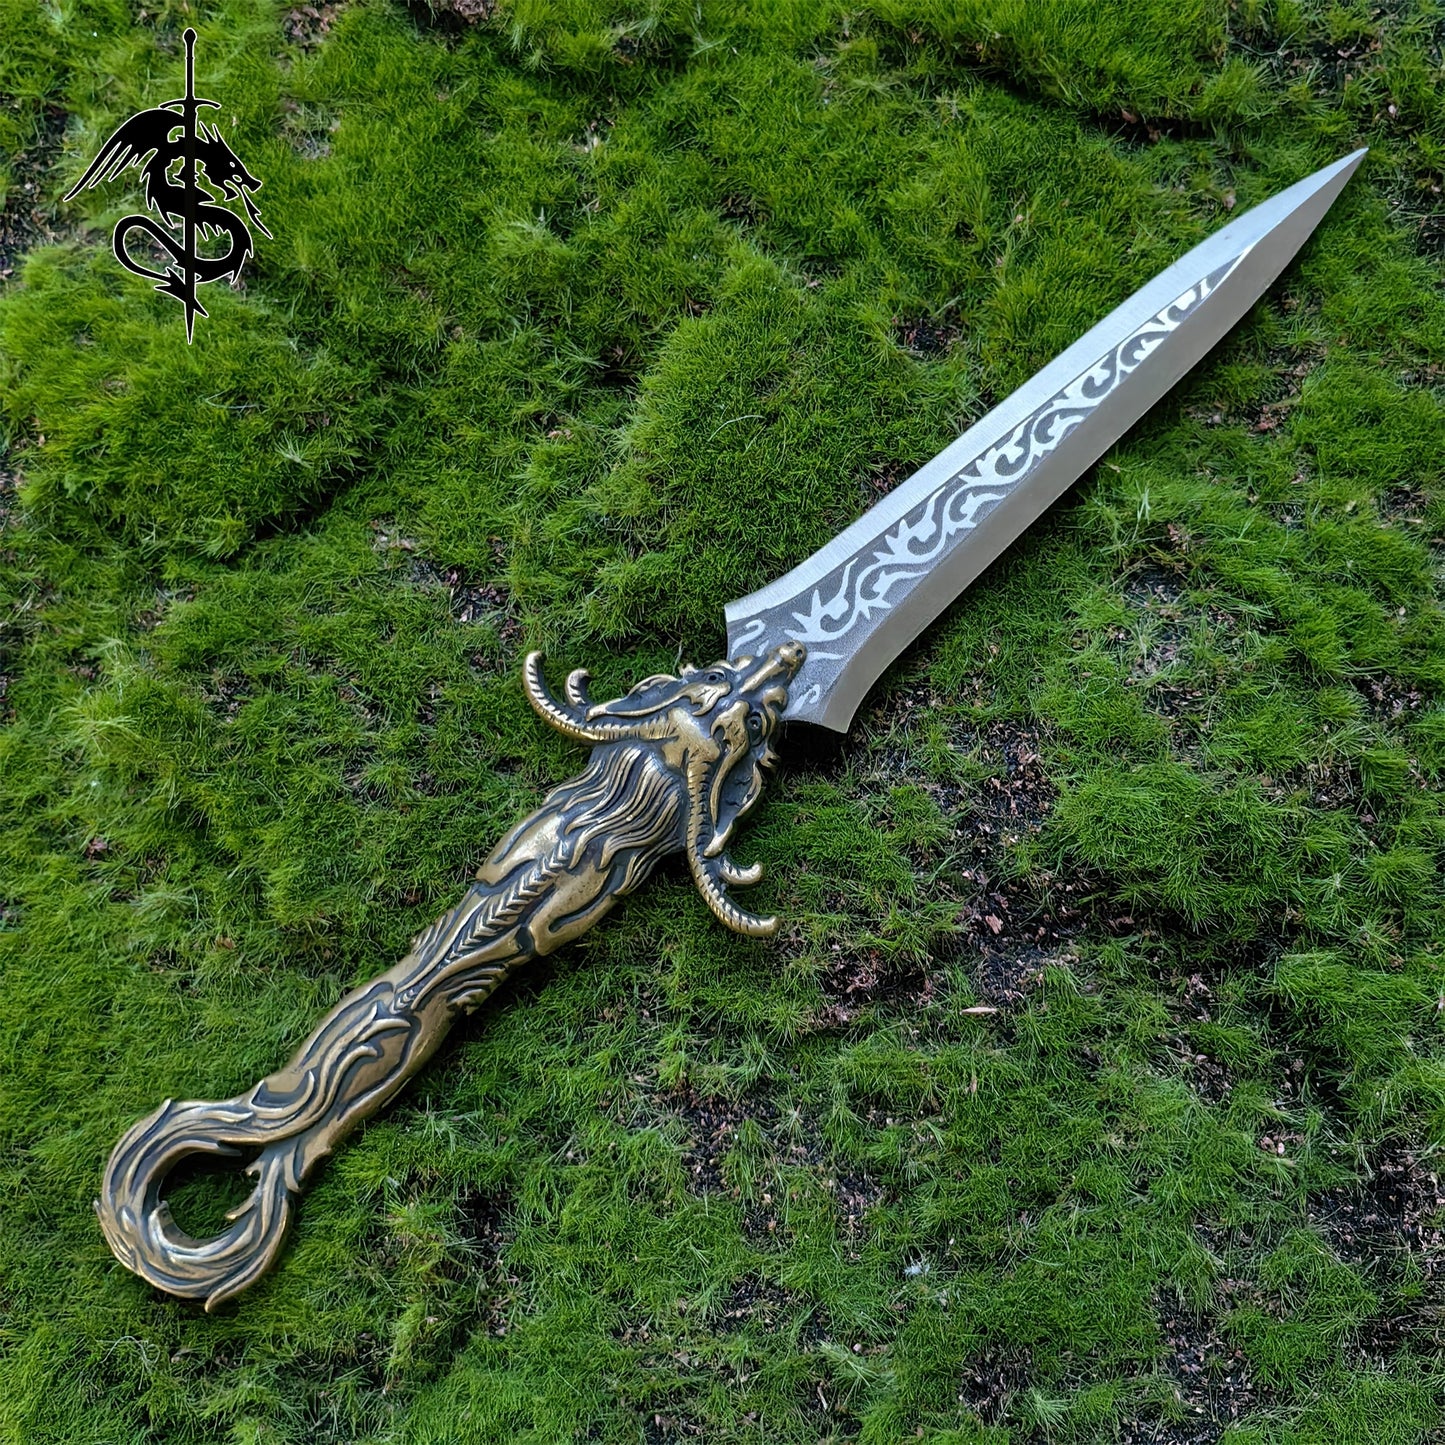 Brass Dragon Tea Knife Hand Forged Short Sword Letter Opener 